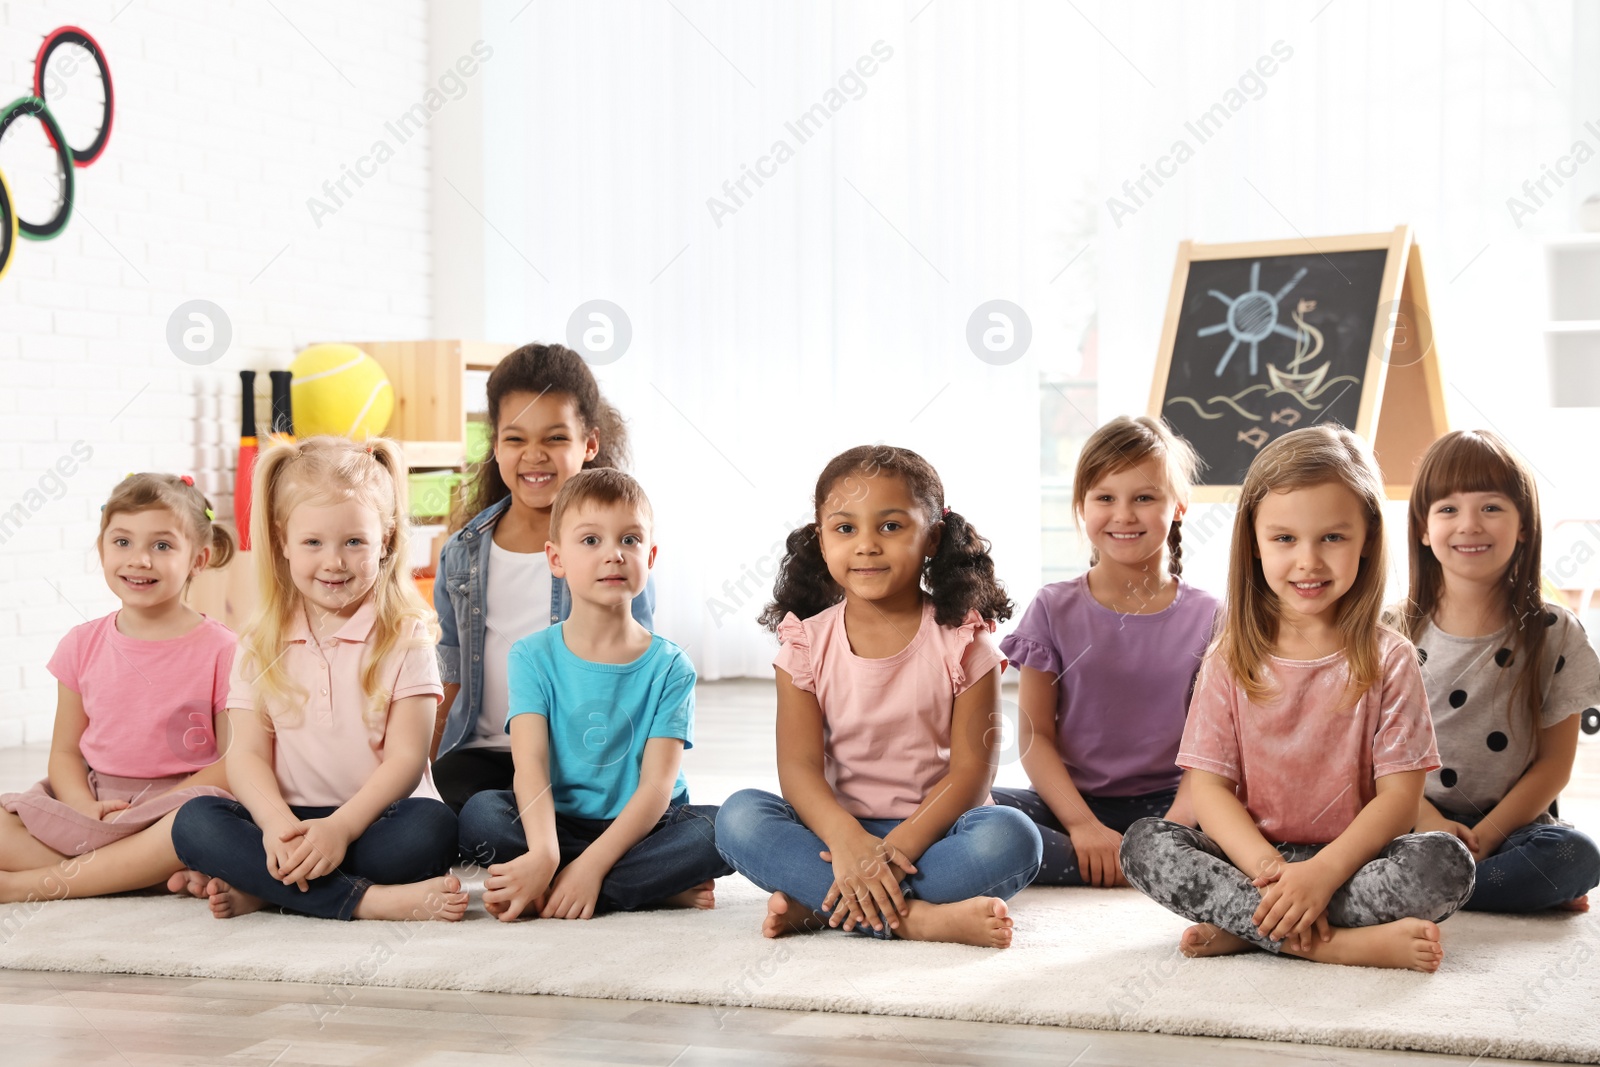 Photo of Group of cute little children sitting on floor indoors. Kindergarten playtime activities